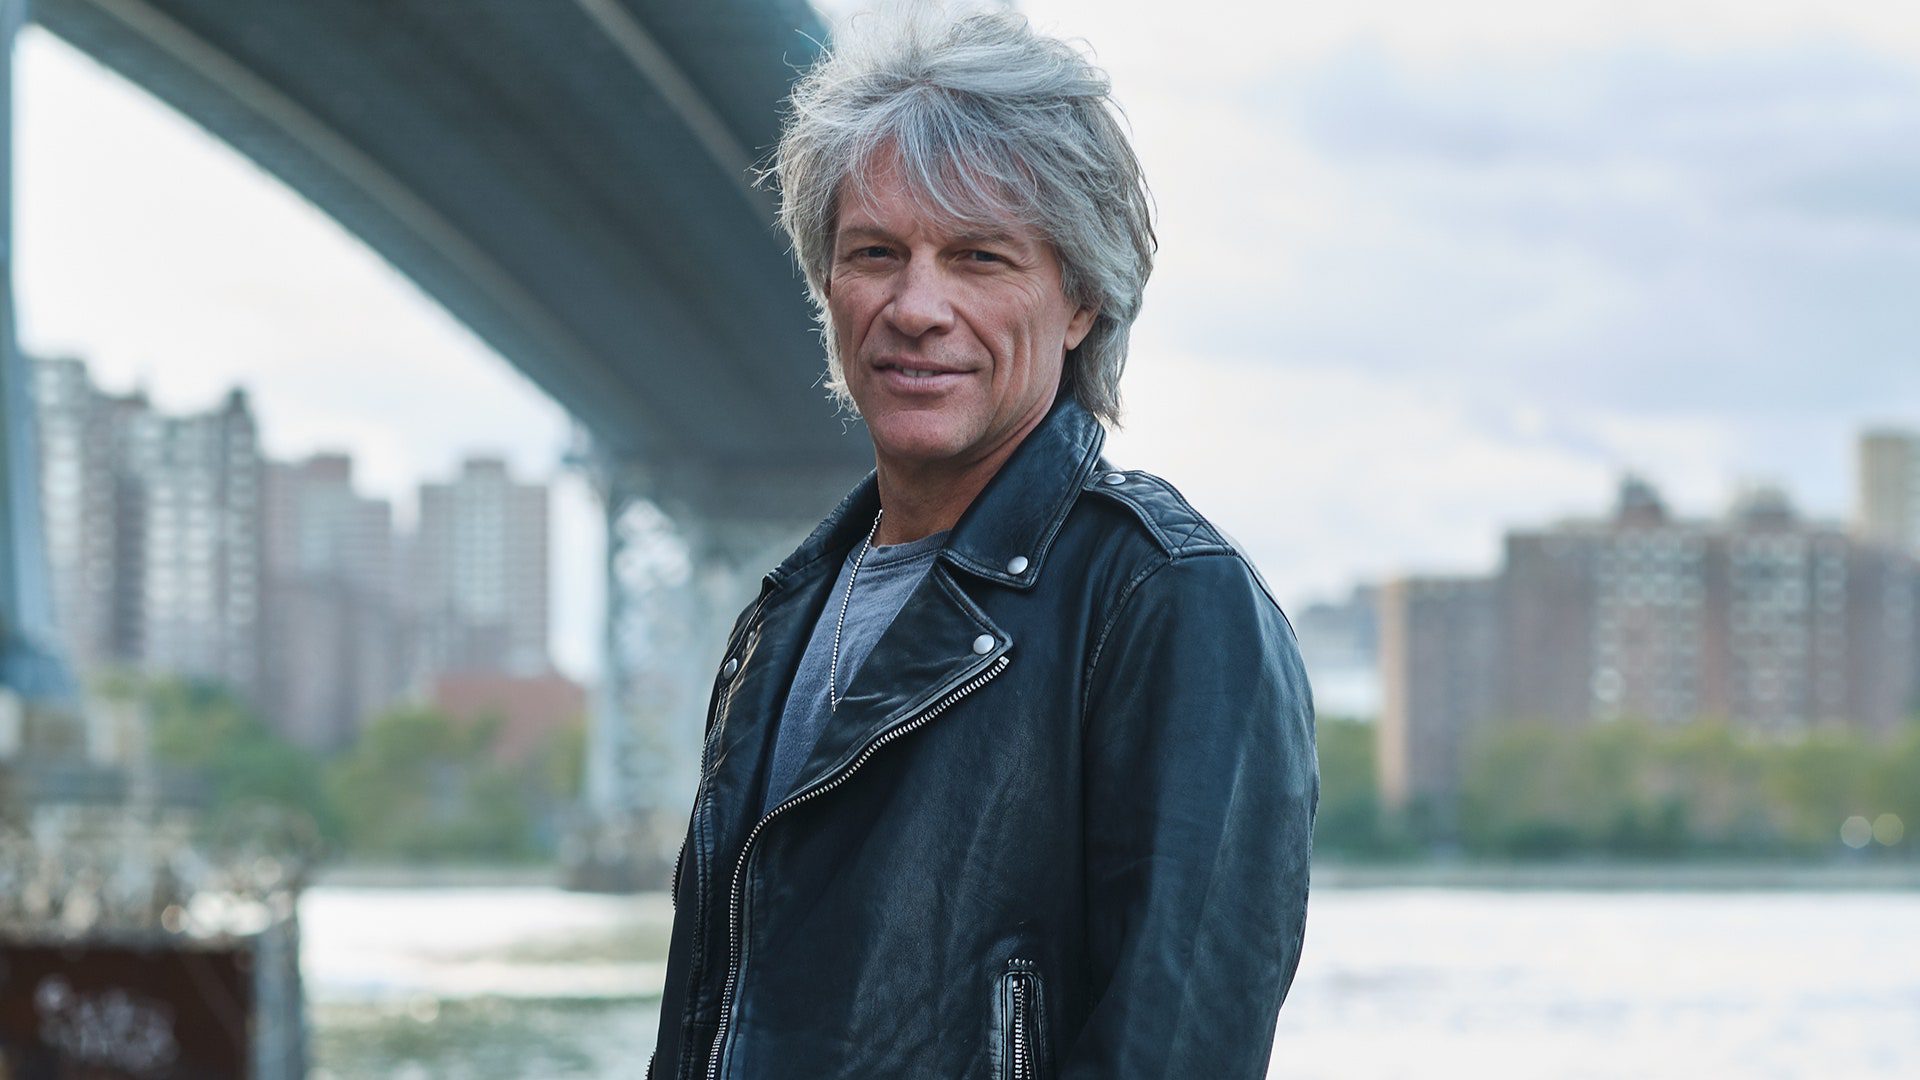  Valeur nette de Jon Bon Jovi 